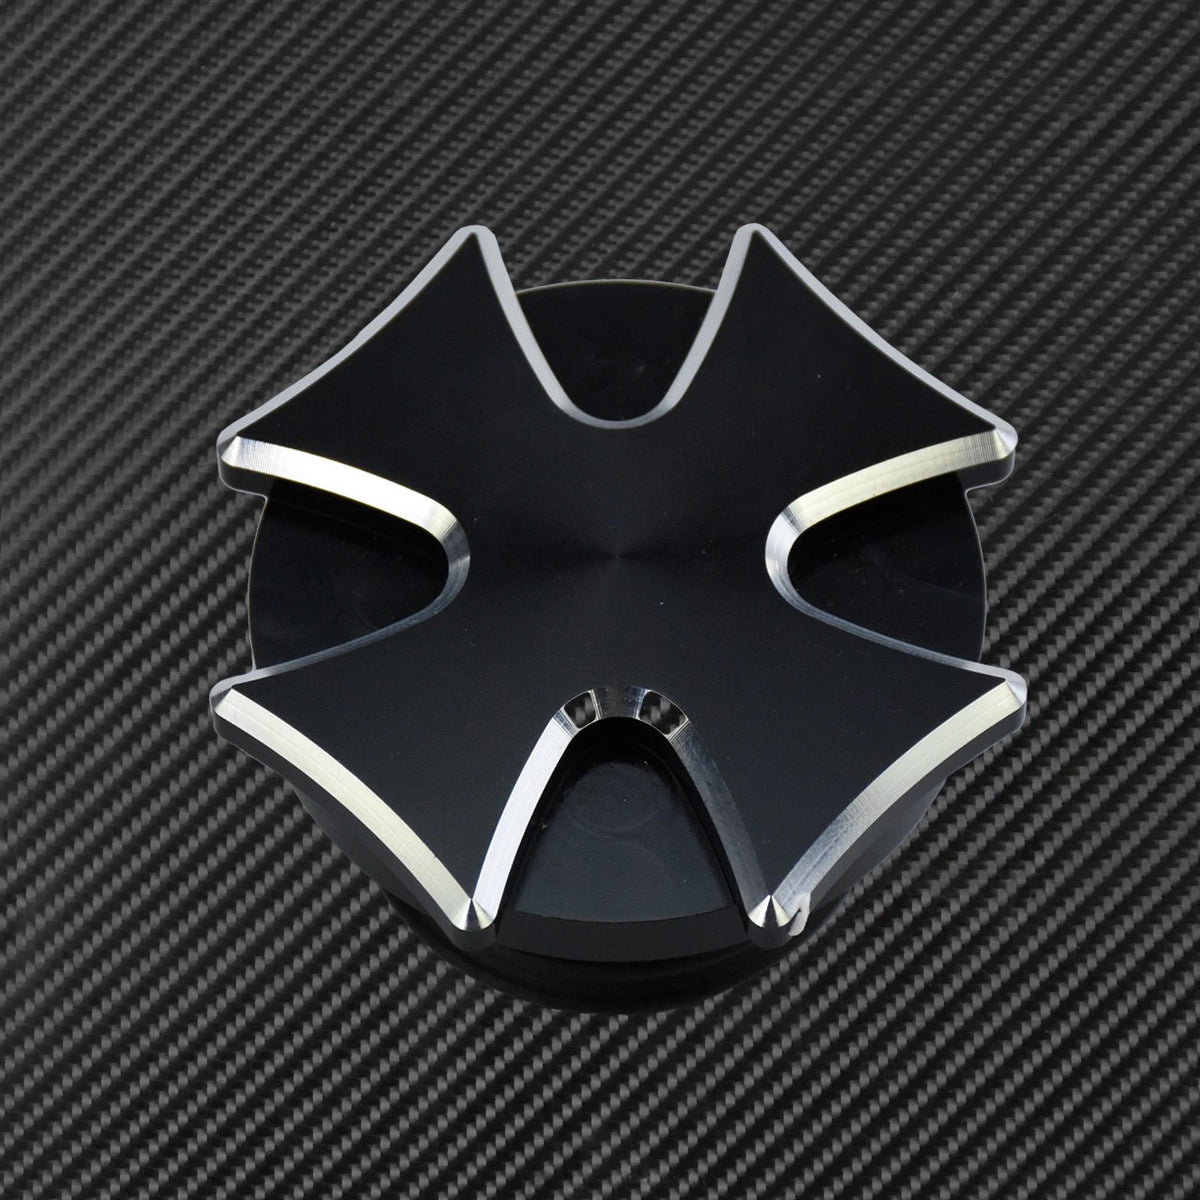 Bouchon de Réservoir D'essence Pour Moto Original et Design